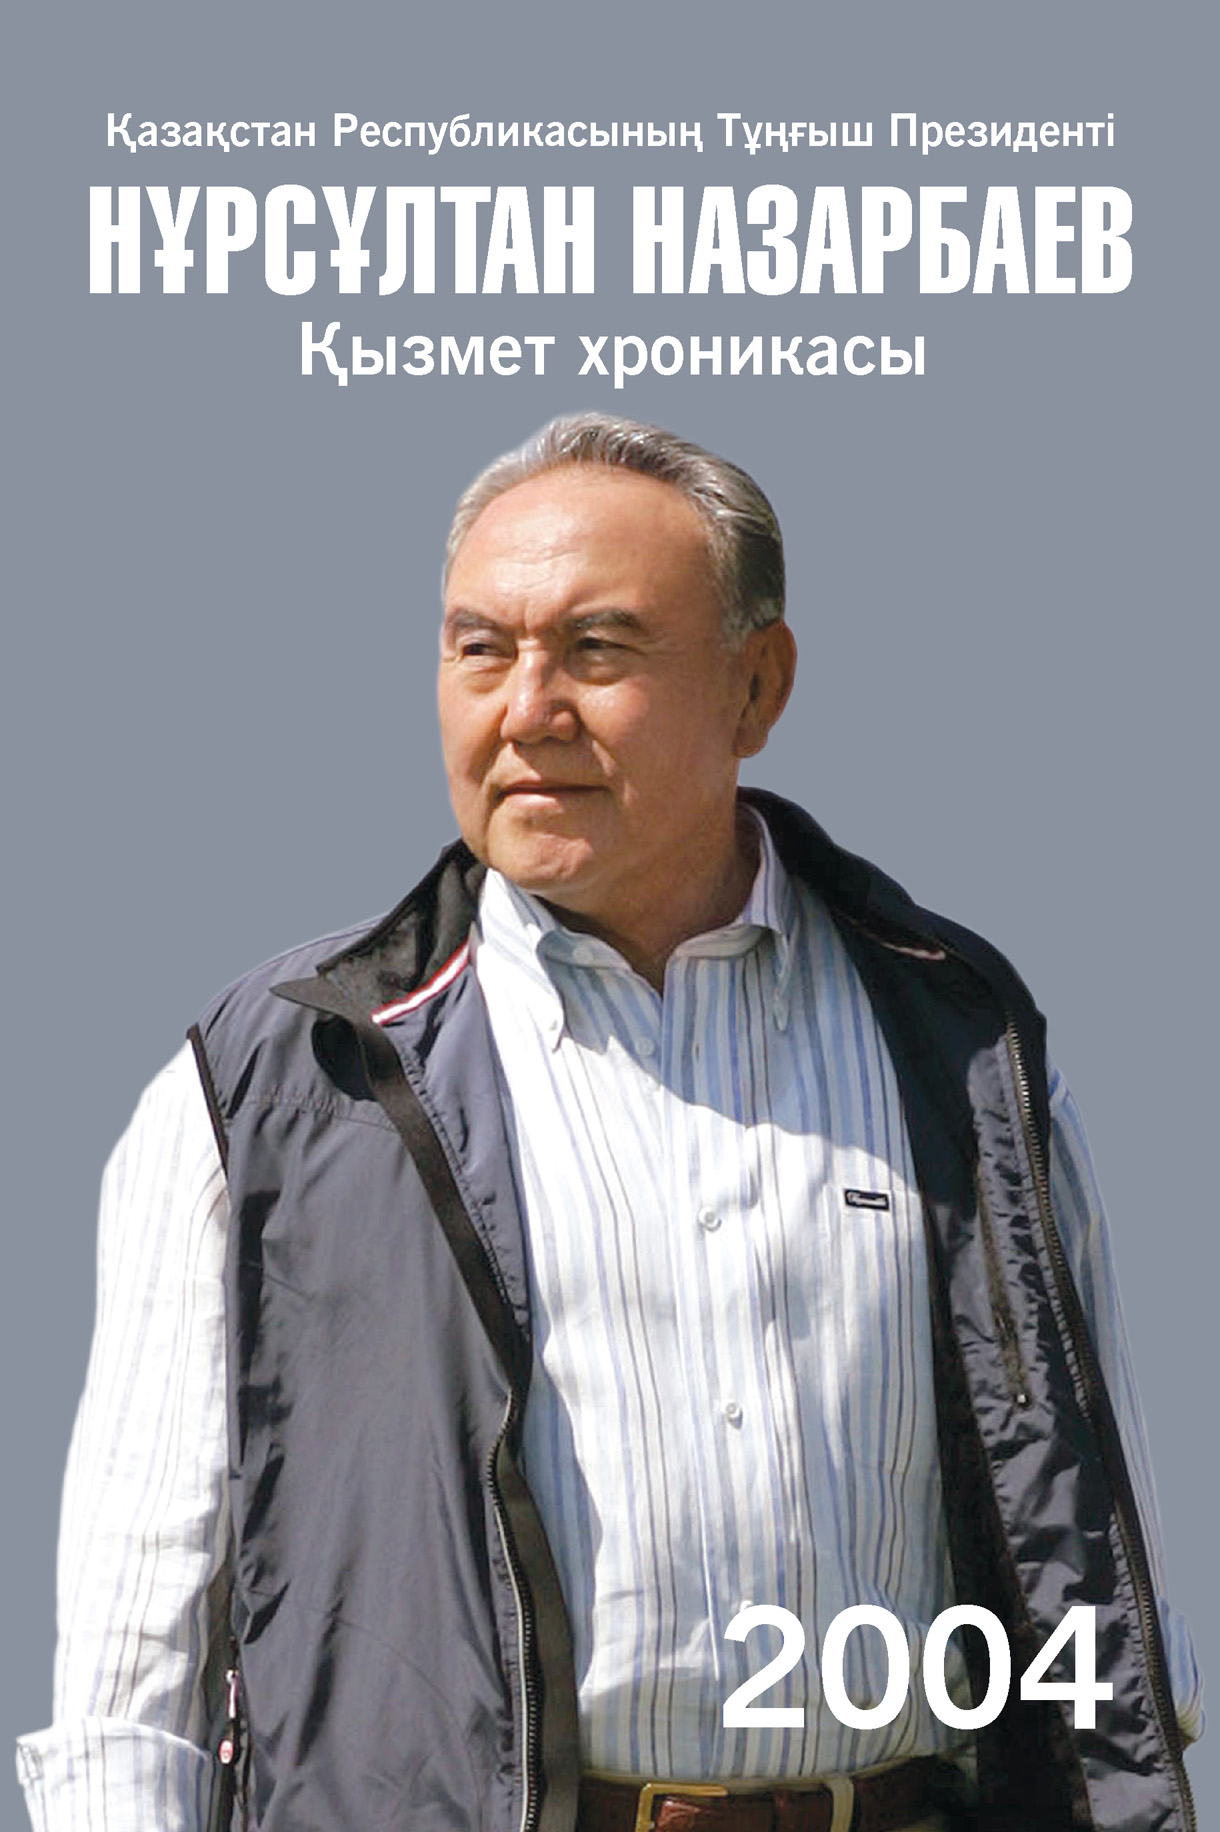 Қазақстан Республикасының Тұңғыш Президенті Нұрсұлтан Назарбаев. Қызмет хроникасы. 2004 жыл